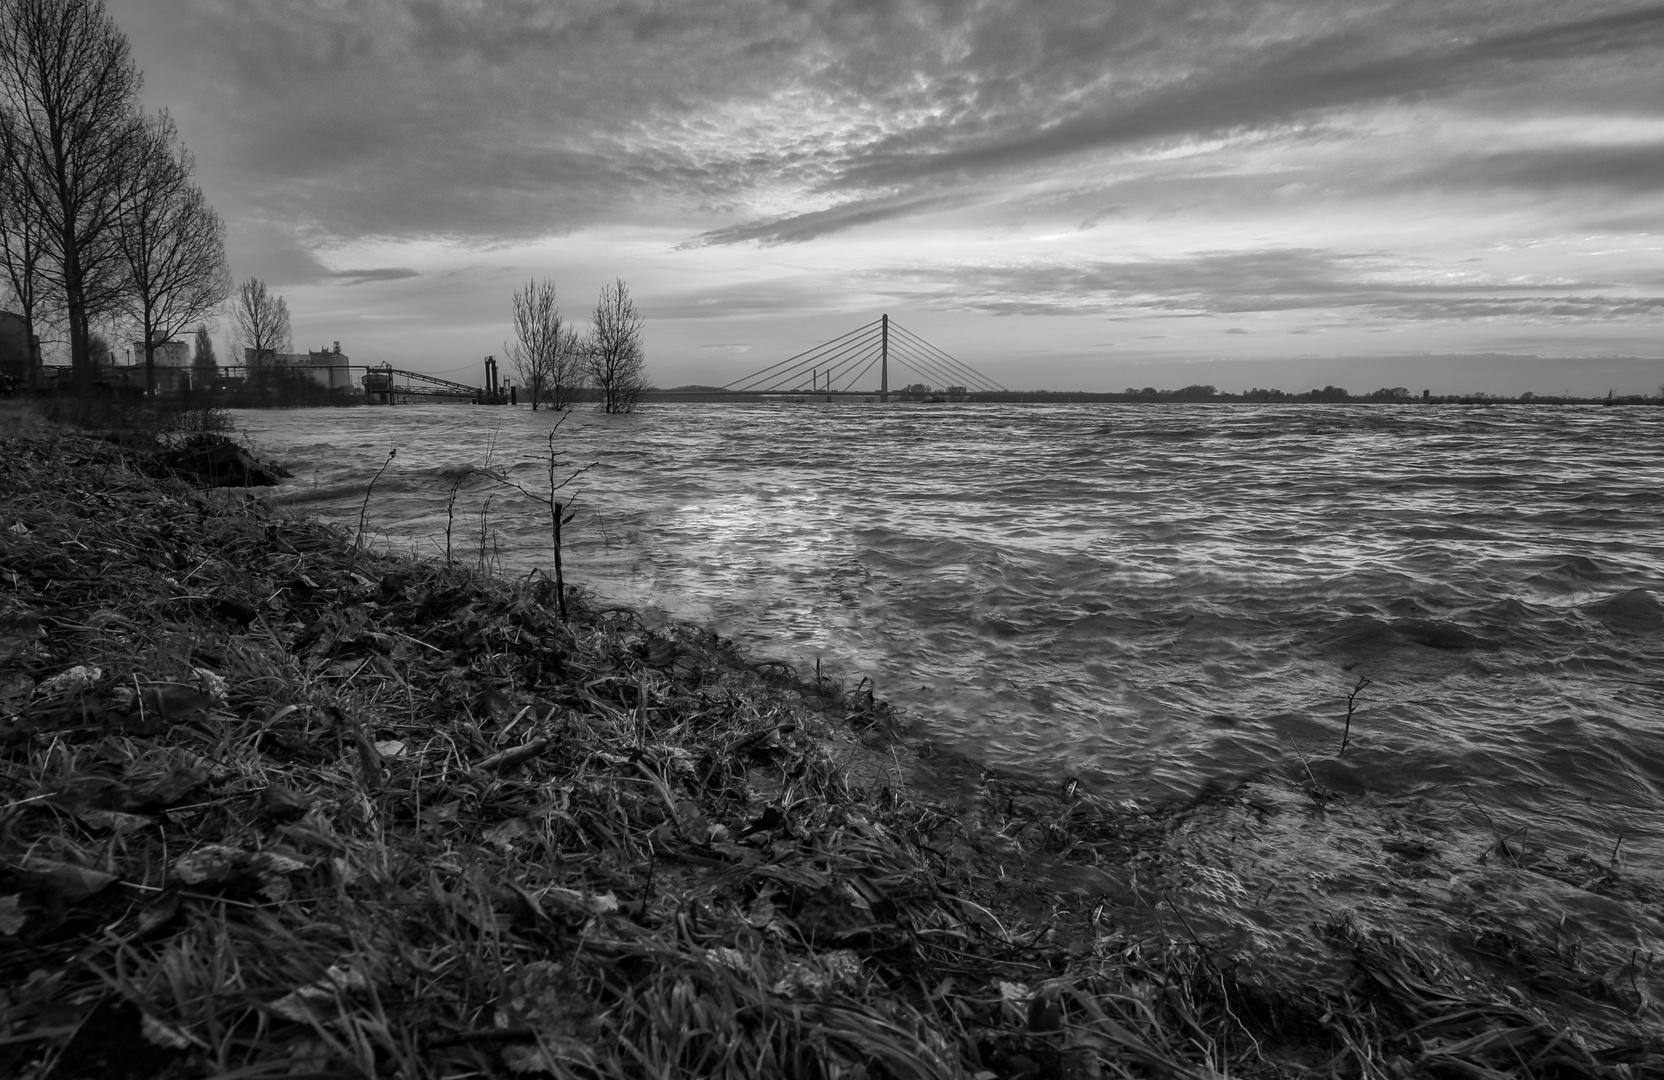 Hochwasser am Rhein in schwarz-weiß